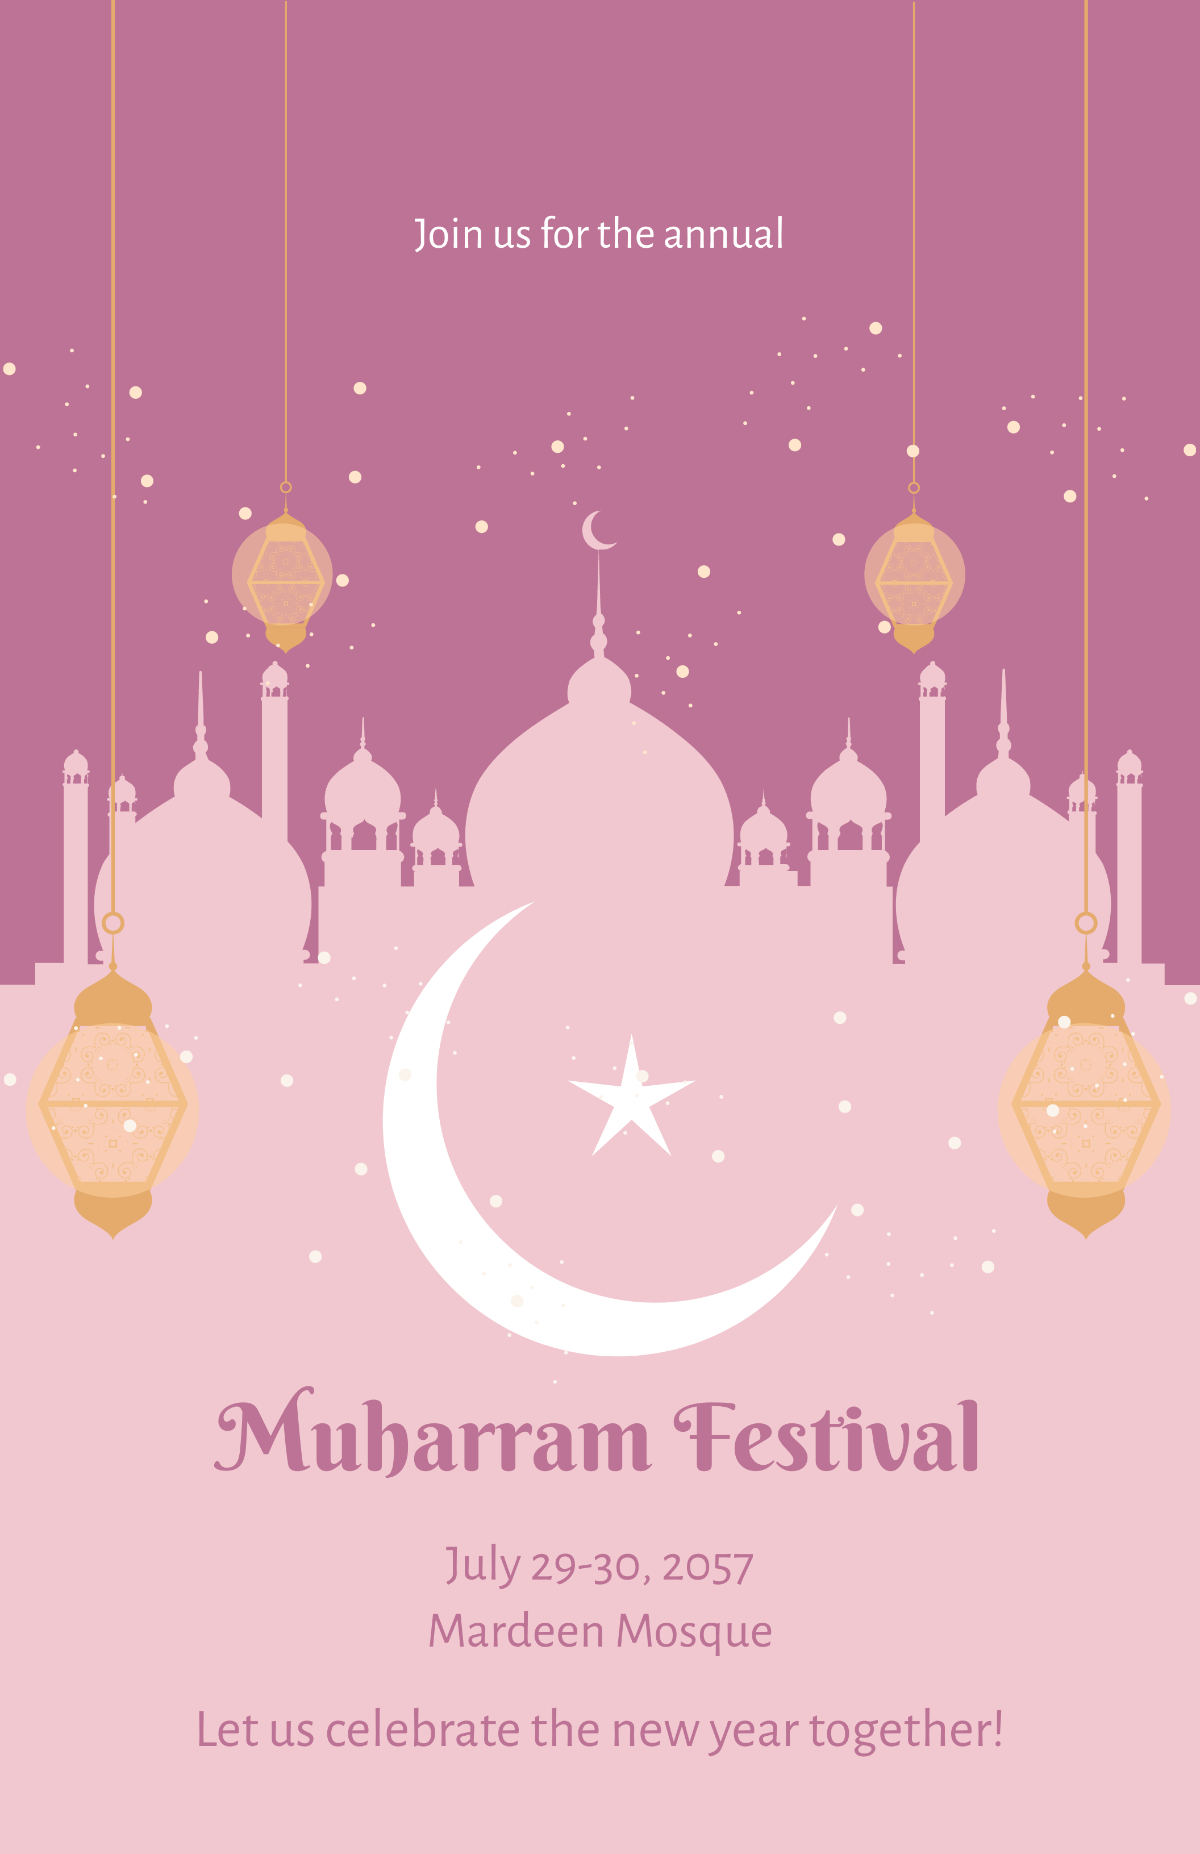 Free Muharram Festival Poster Template